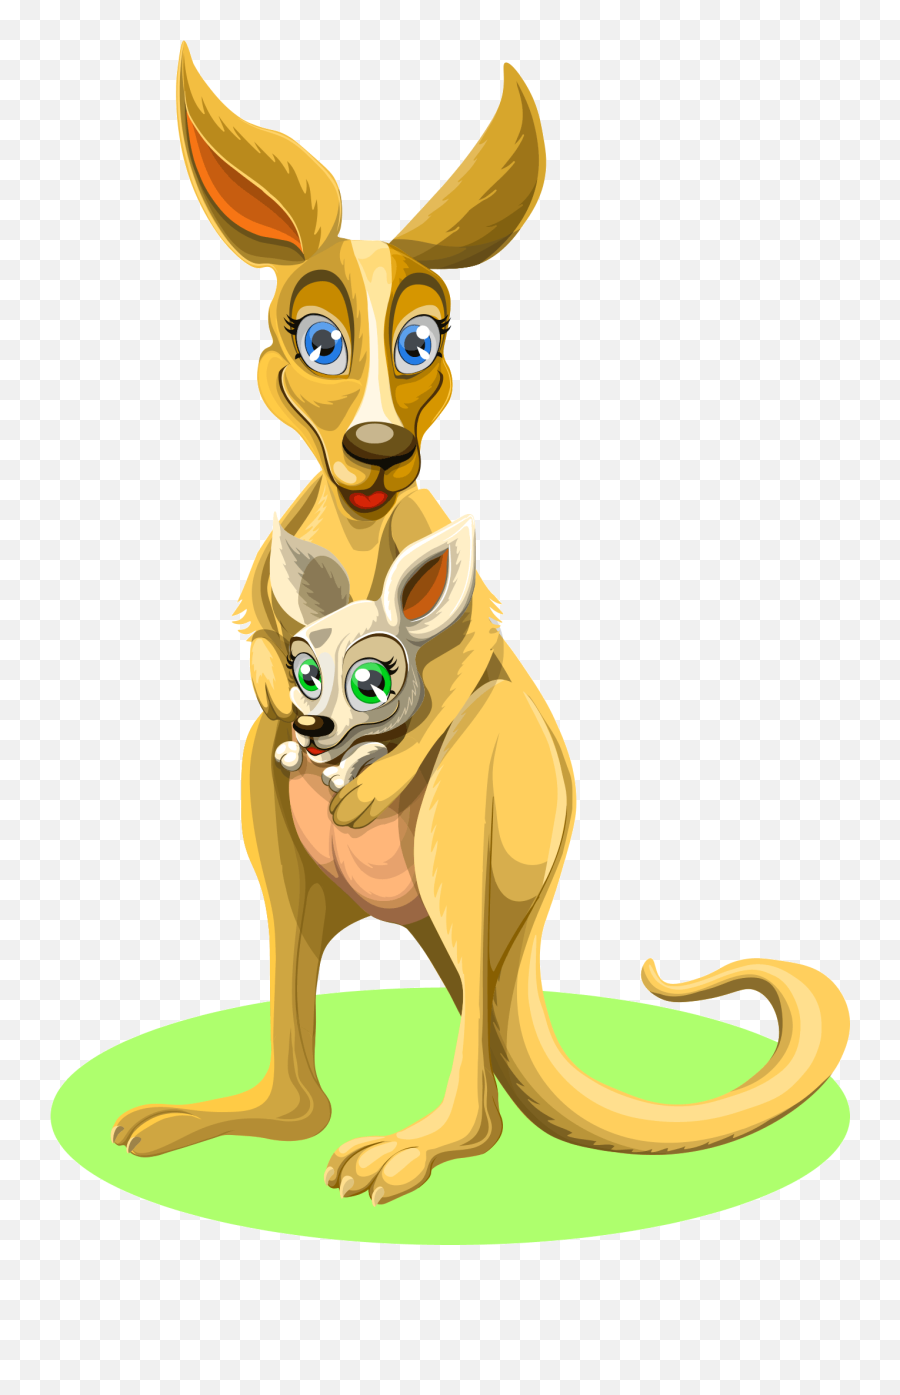 Hd Kangaroo Png Image Free Download - Poezii Pentru Copii Hazlii Emoji,Kangaroo Clipart